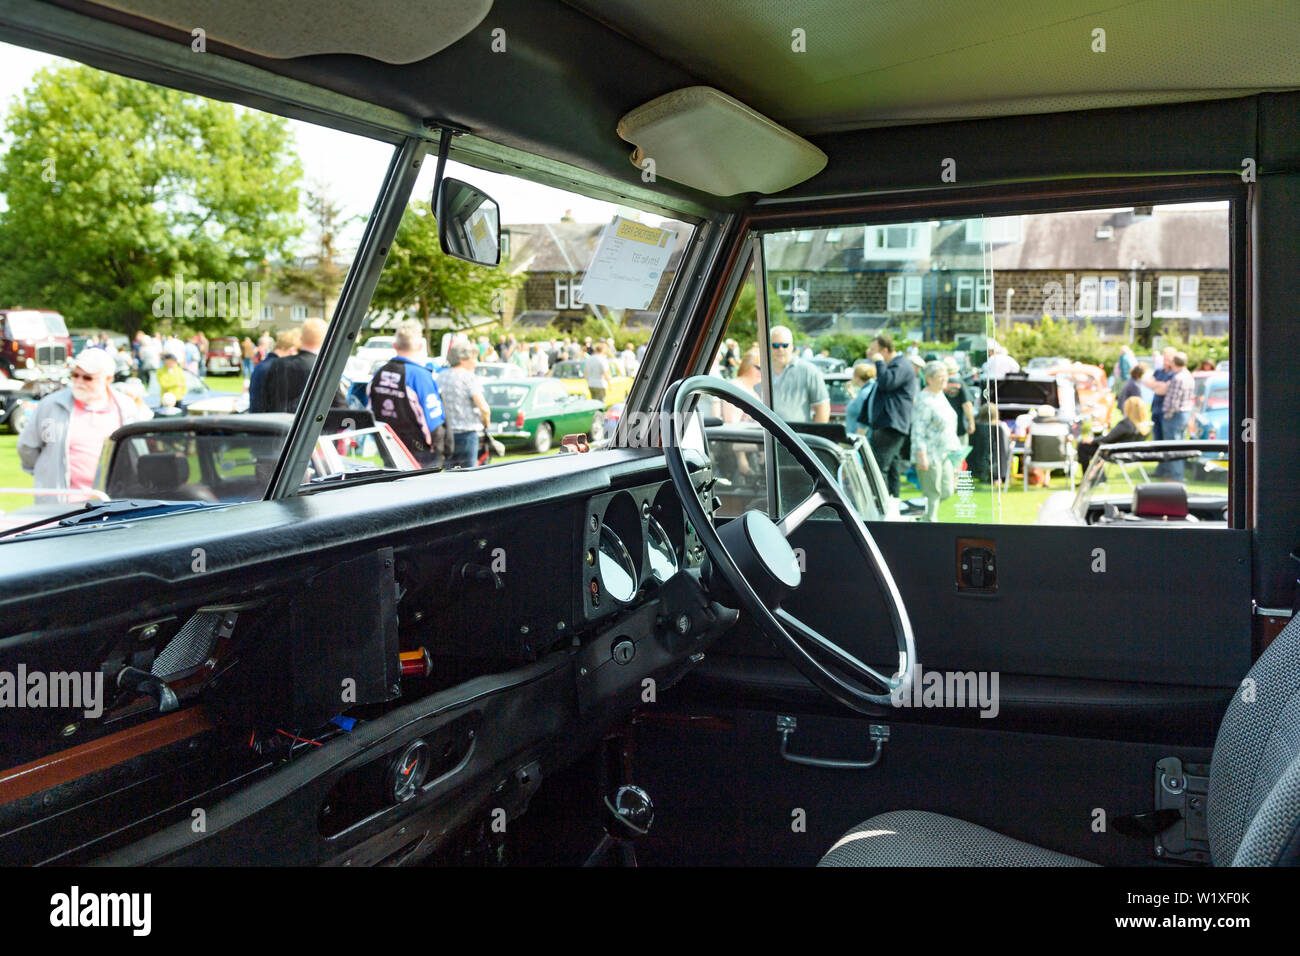 Vista interna della leggendaria Land Rover (1982 Series 3 County Station Wagon) & i visitatori al classico spettacolo del veicolo al di là - Burley in Wharfedale, Inghilterra, Regno Unito. Foto Stock